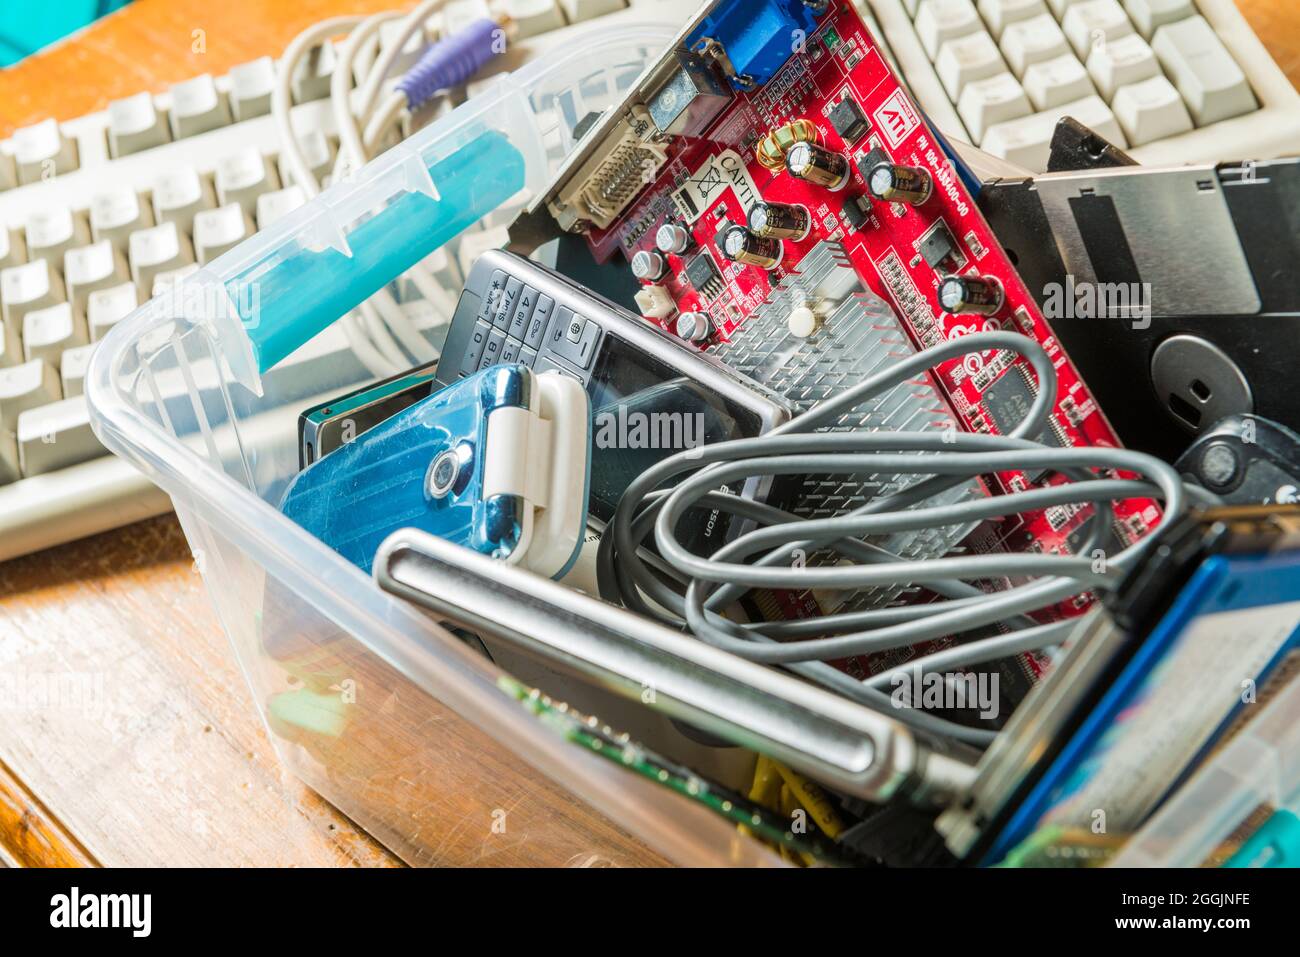 Computertastaturen und veraltete elektronische und technologische Objekte in einer Kunststoffbox. Technologische Abfälle und deren Recycling sind eines der Themen, die b Stockfoto